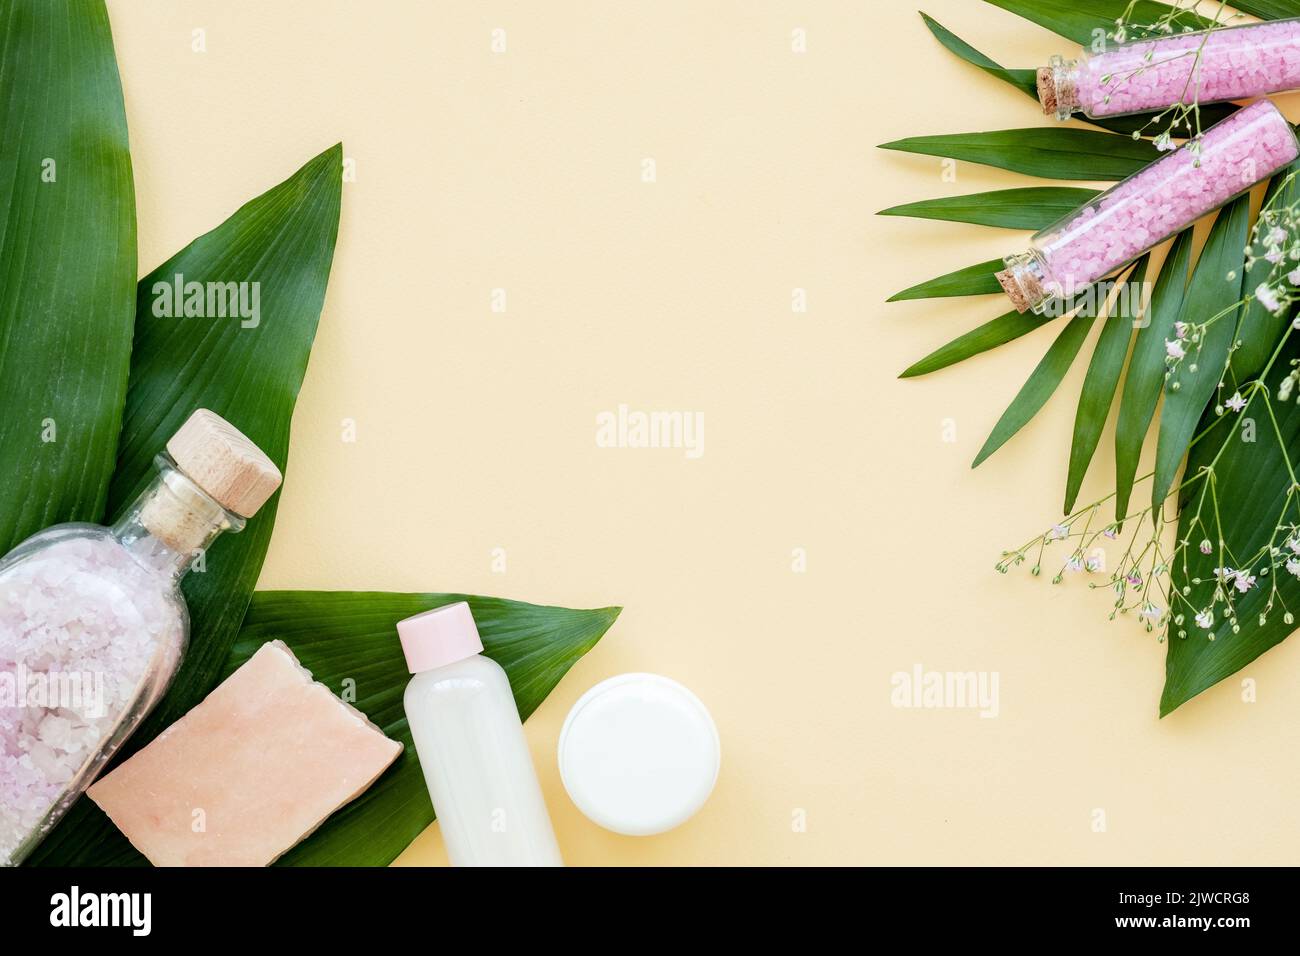 spa salone prodotti cosmetici naturali foglie verdi Foto Stock